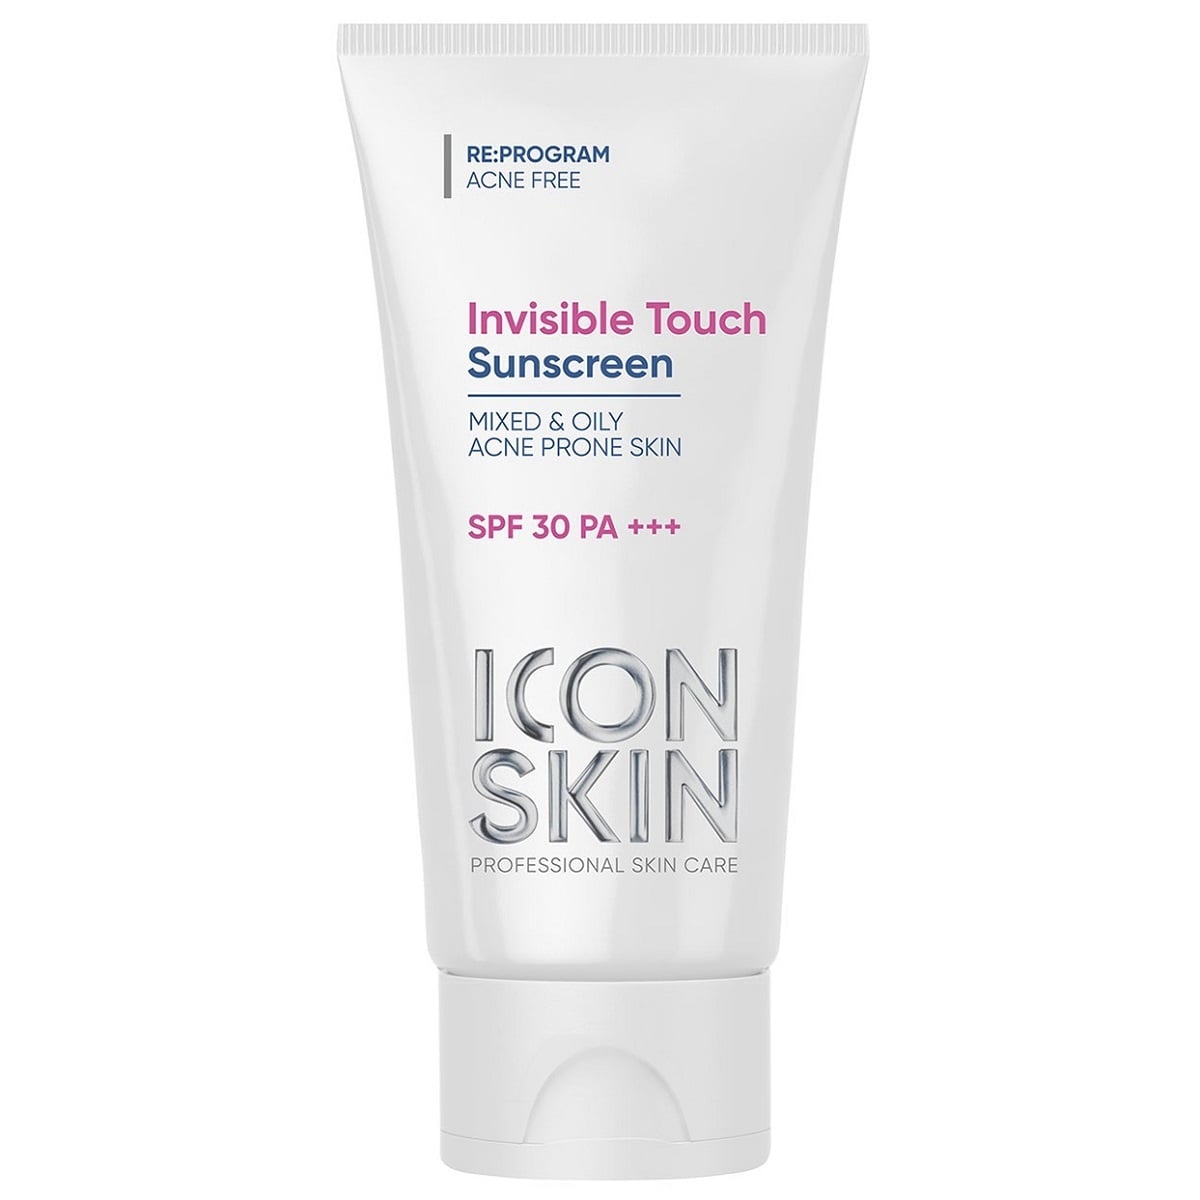 Солнцезащитные средства  Pharmacosmetica Icon Skin Солнцезащитный крем-флюид Invisible Touch SPF30 для жирной и комбинированной проблемной кожи, 50 мл (Icon Skin, Re:Program)